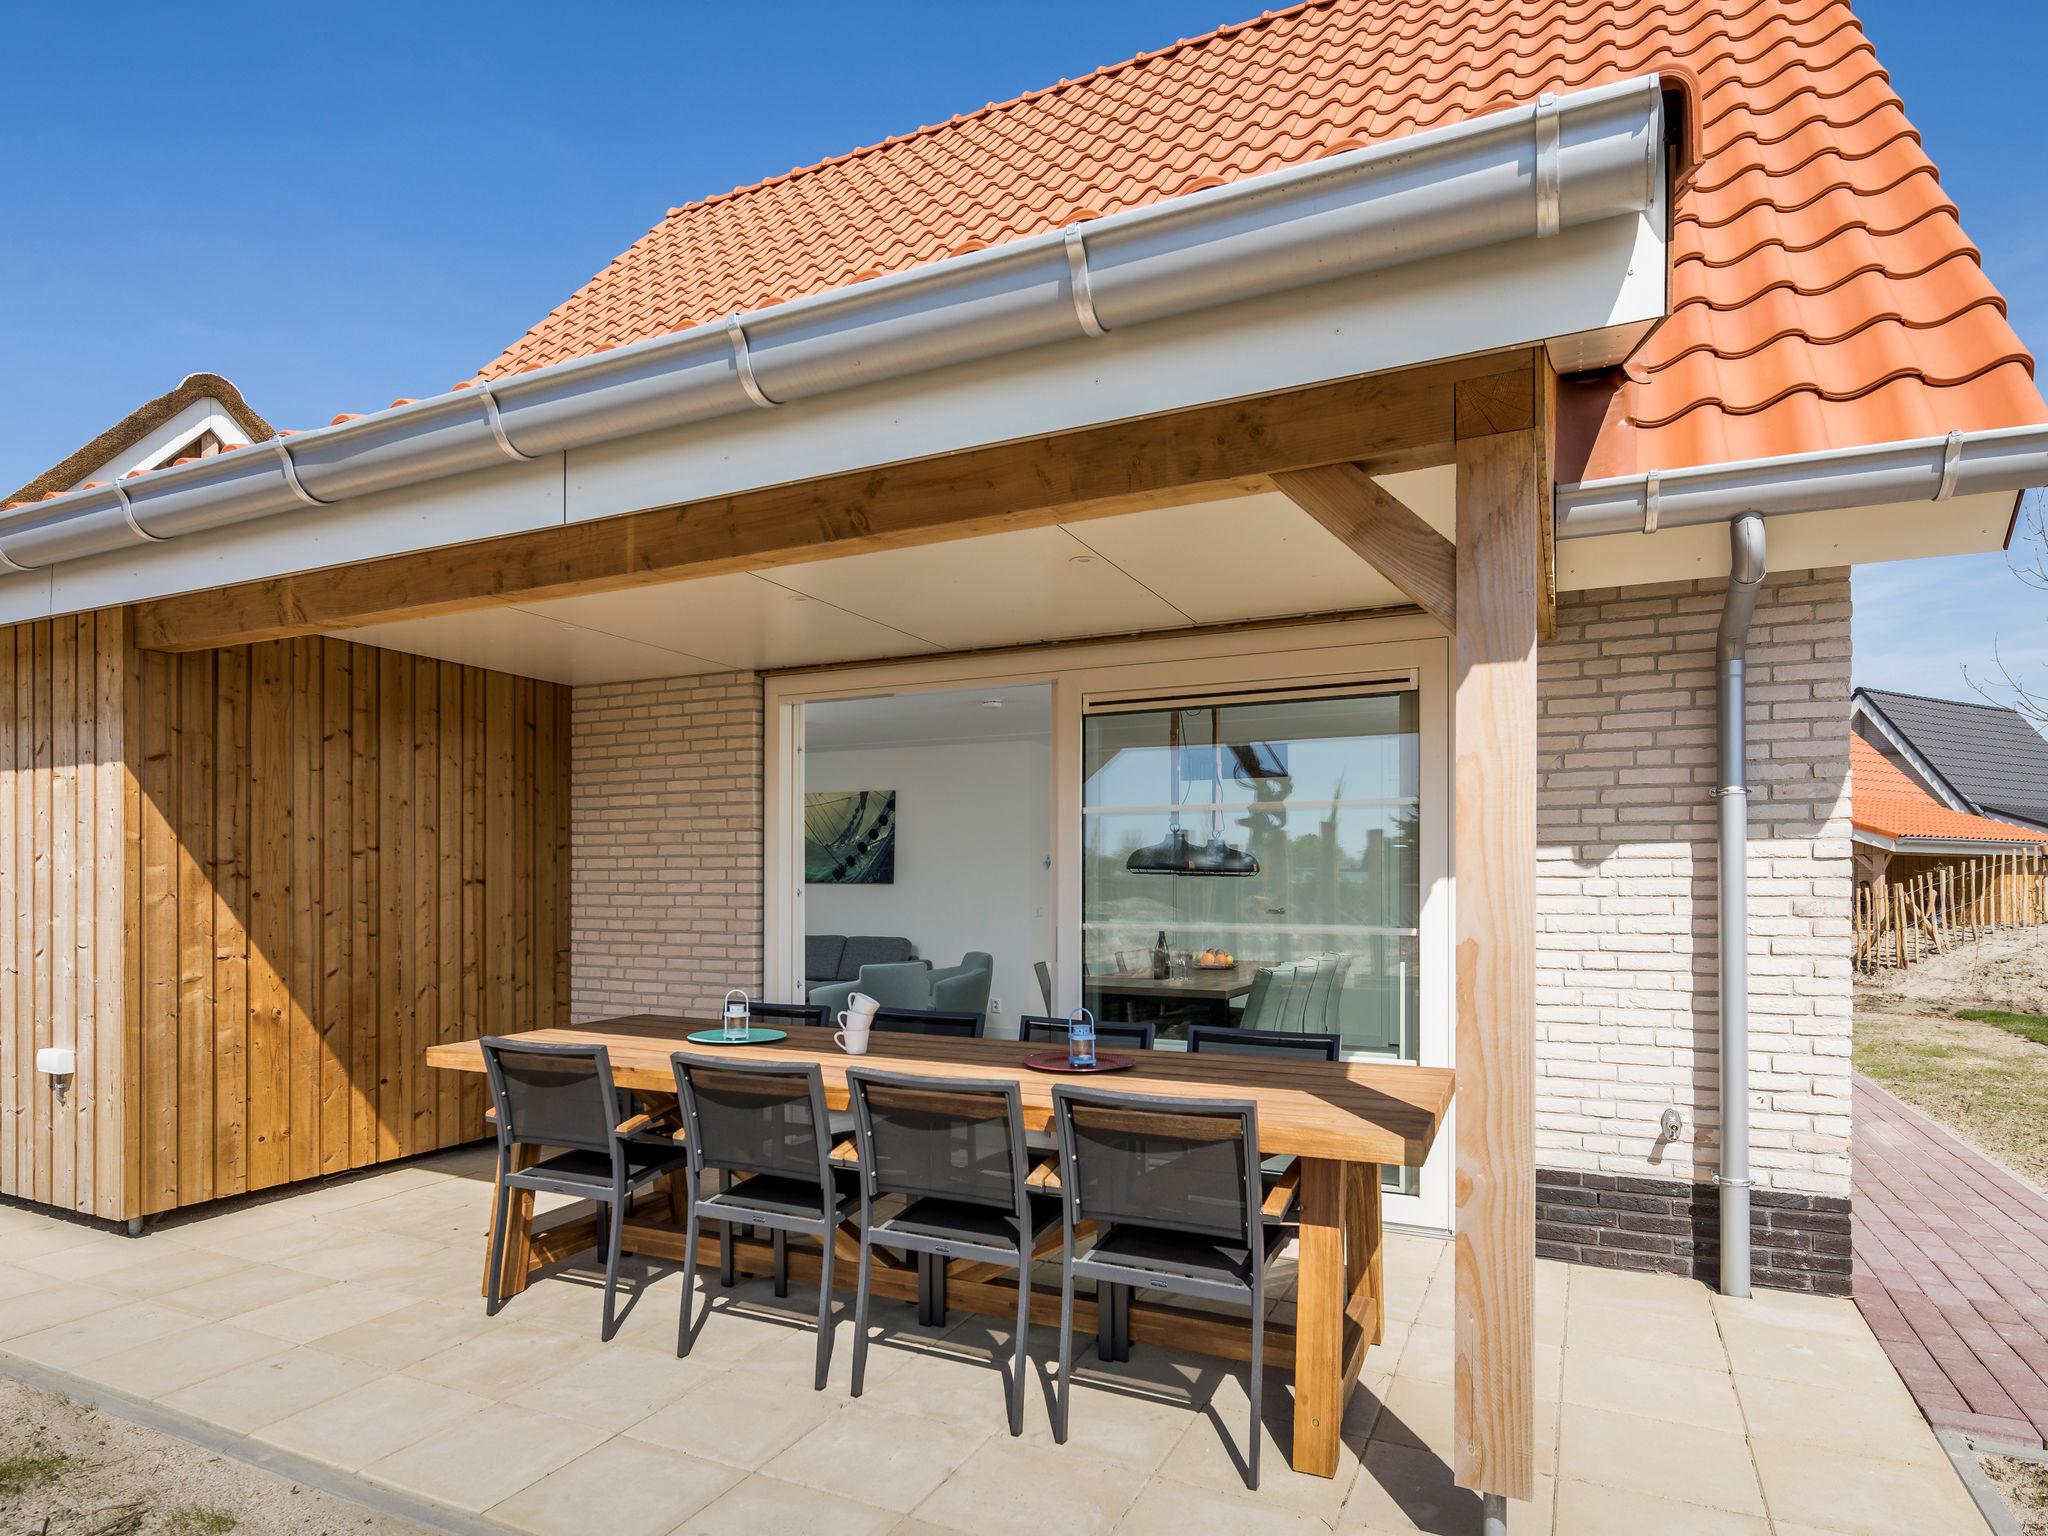 Luxe villa voor 8 personen op vakantiepark in Nieuwvliet-Bad, direct naast het strand gelegen